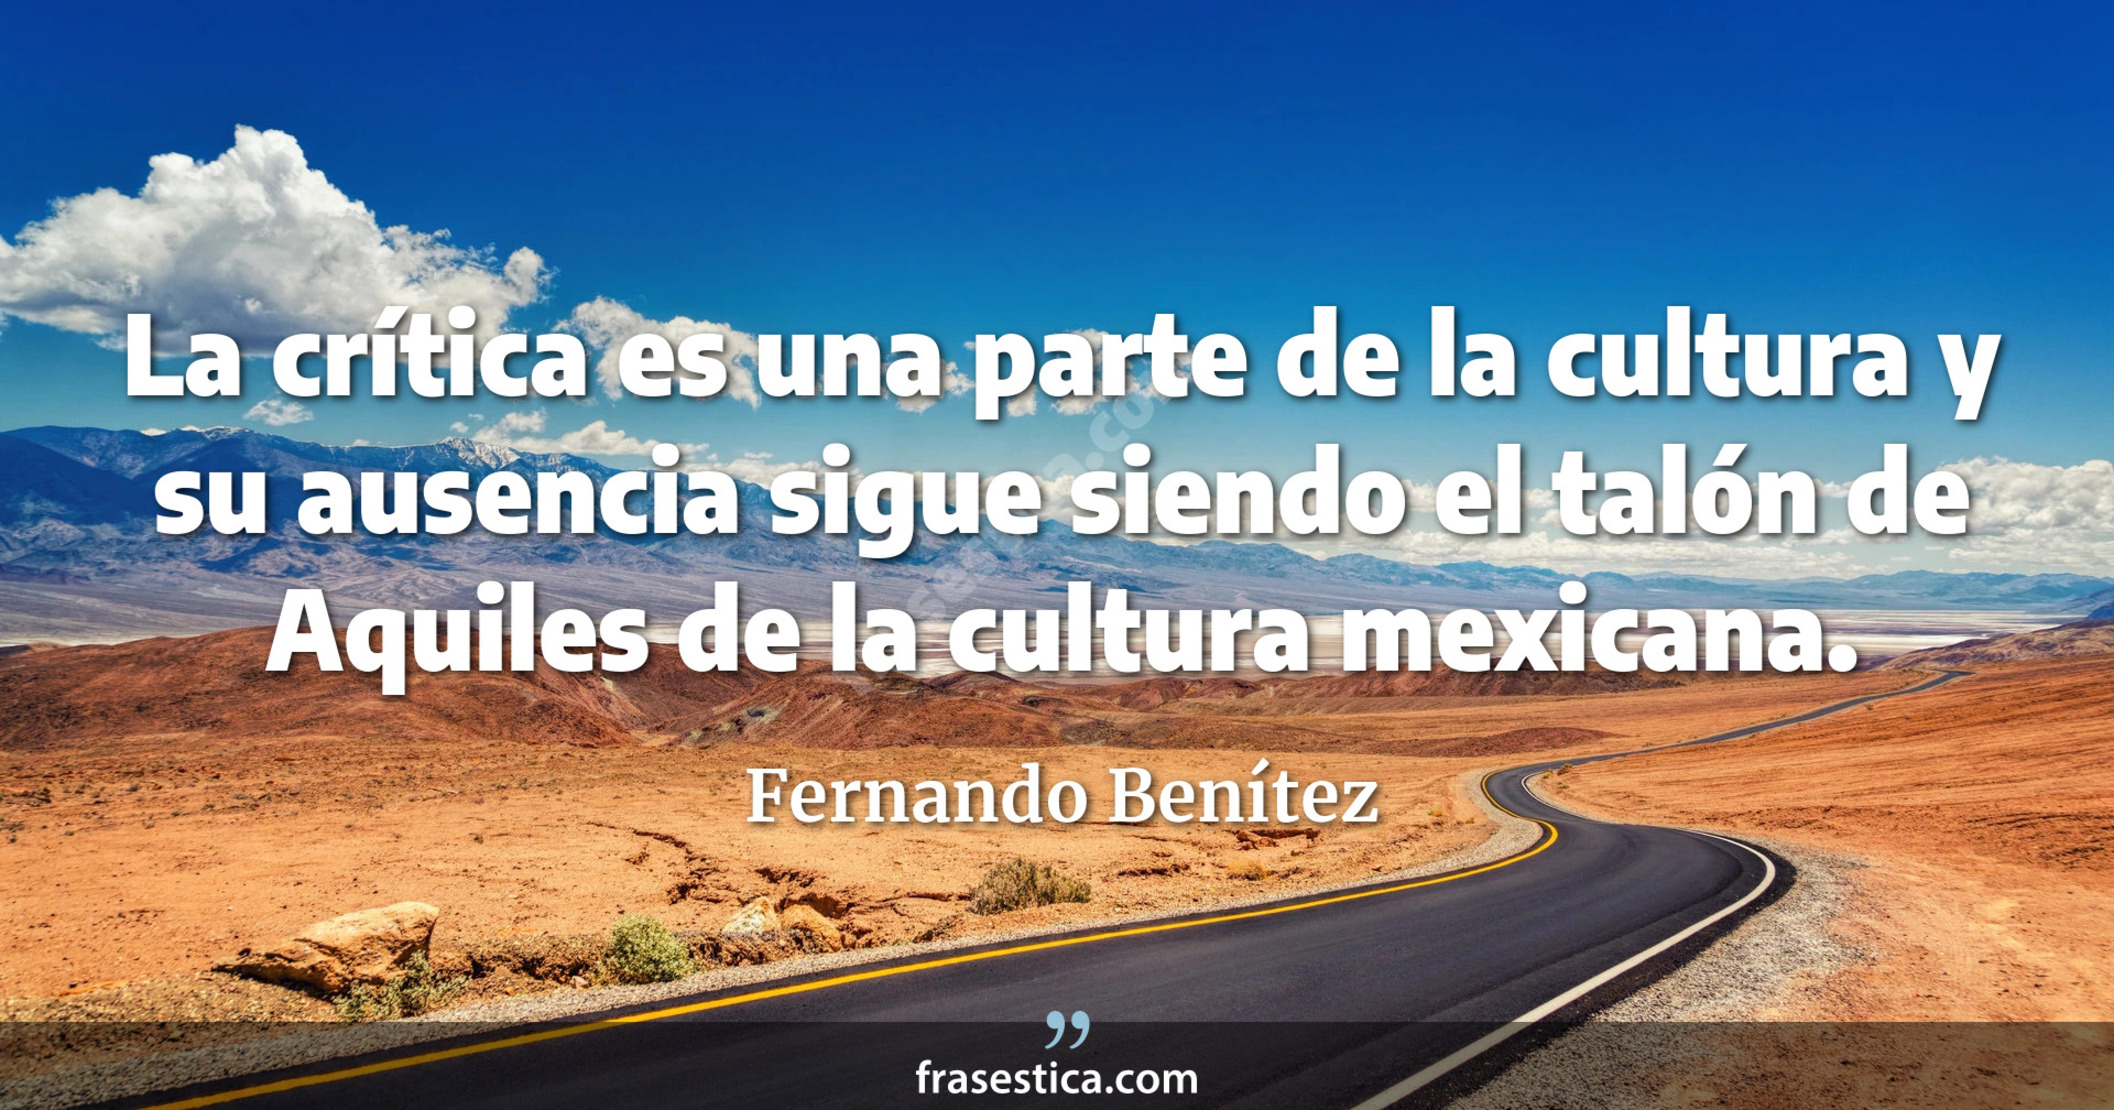 La crítica es una parte de la cultura y su ausencia sigue siendo el talón de Aquiles de la cultura mexicana. - Fernando Benítez